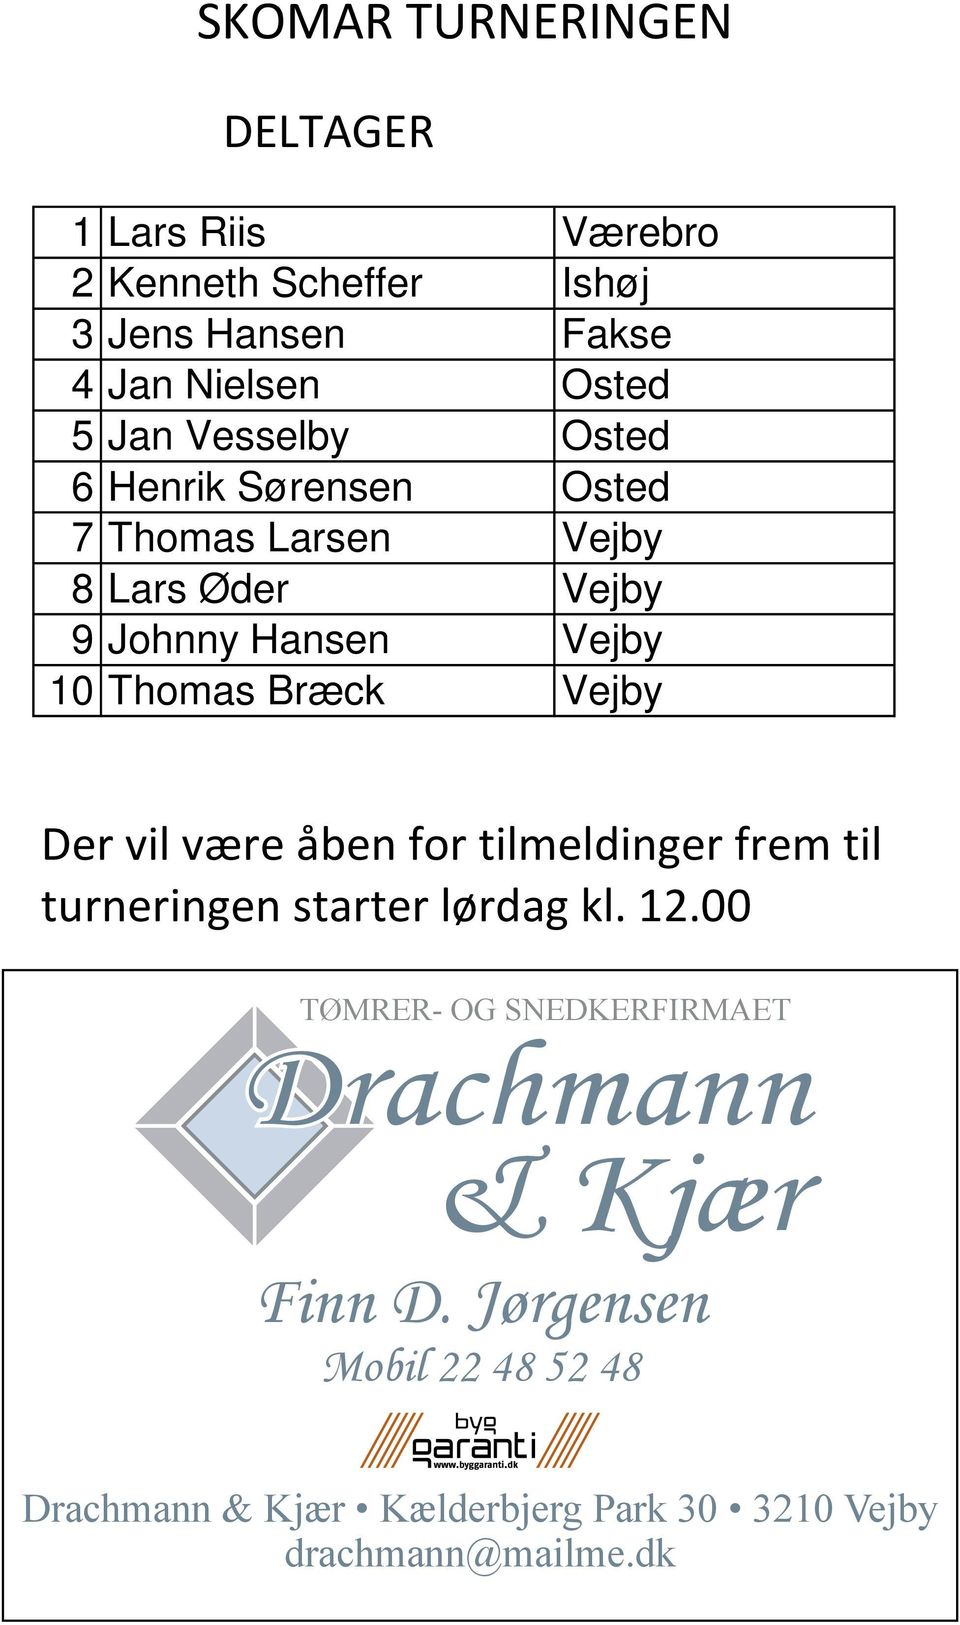 12.00 TØMRER- OG SNEDKERFIRMAET Drachmann & Kjær Finn D. Jørgensen Finn D.